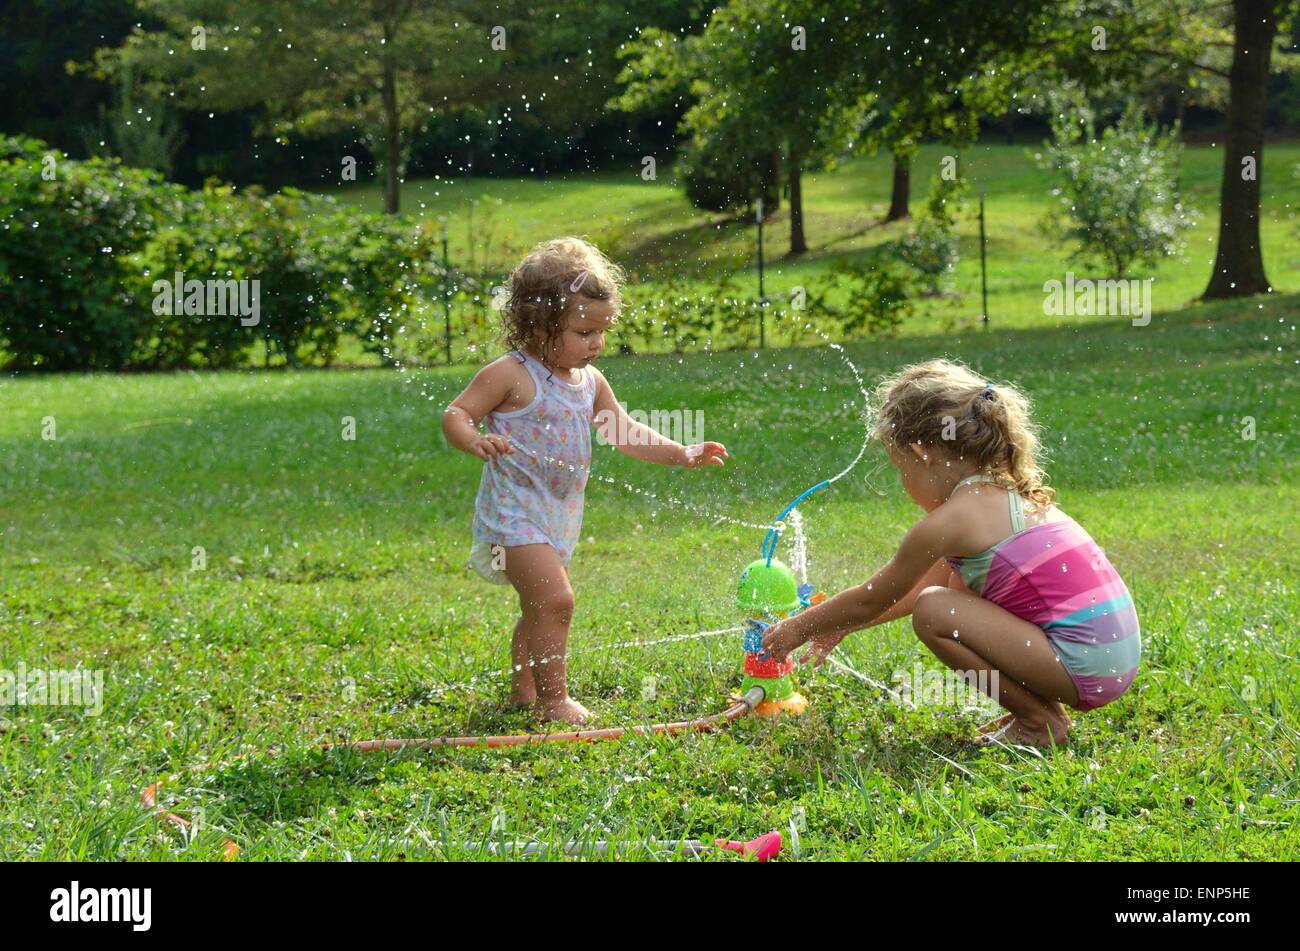 Zwei junge Mädchen, ein Kleinkind und ein Pre-Schooler, spielen mit einem Spielzeug Wasser Sprinkler.  Wasser rund um die Mädchen spritzen Stockfoto